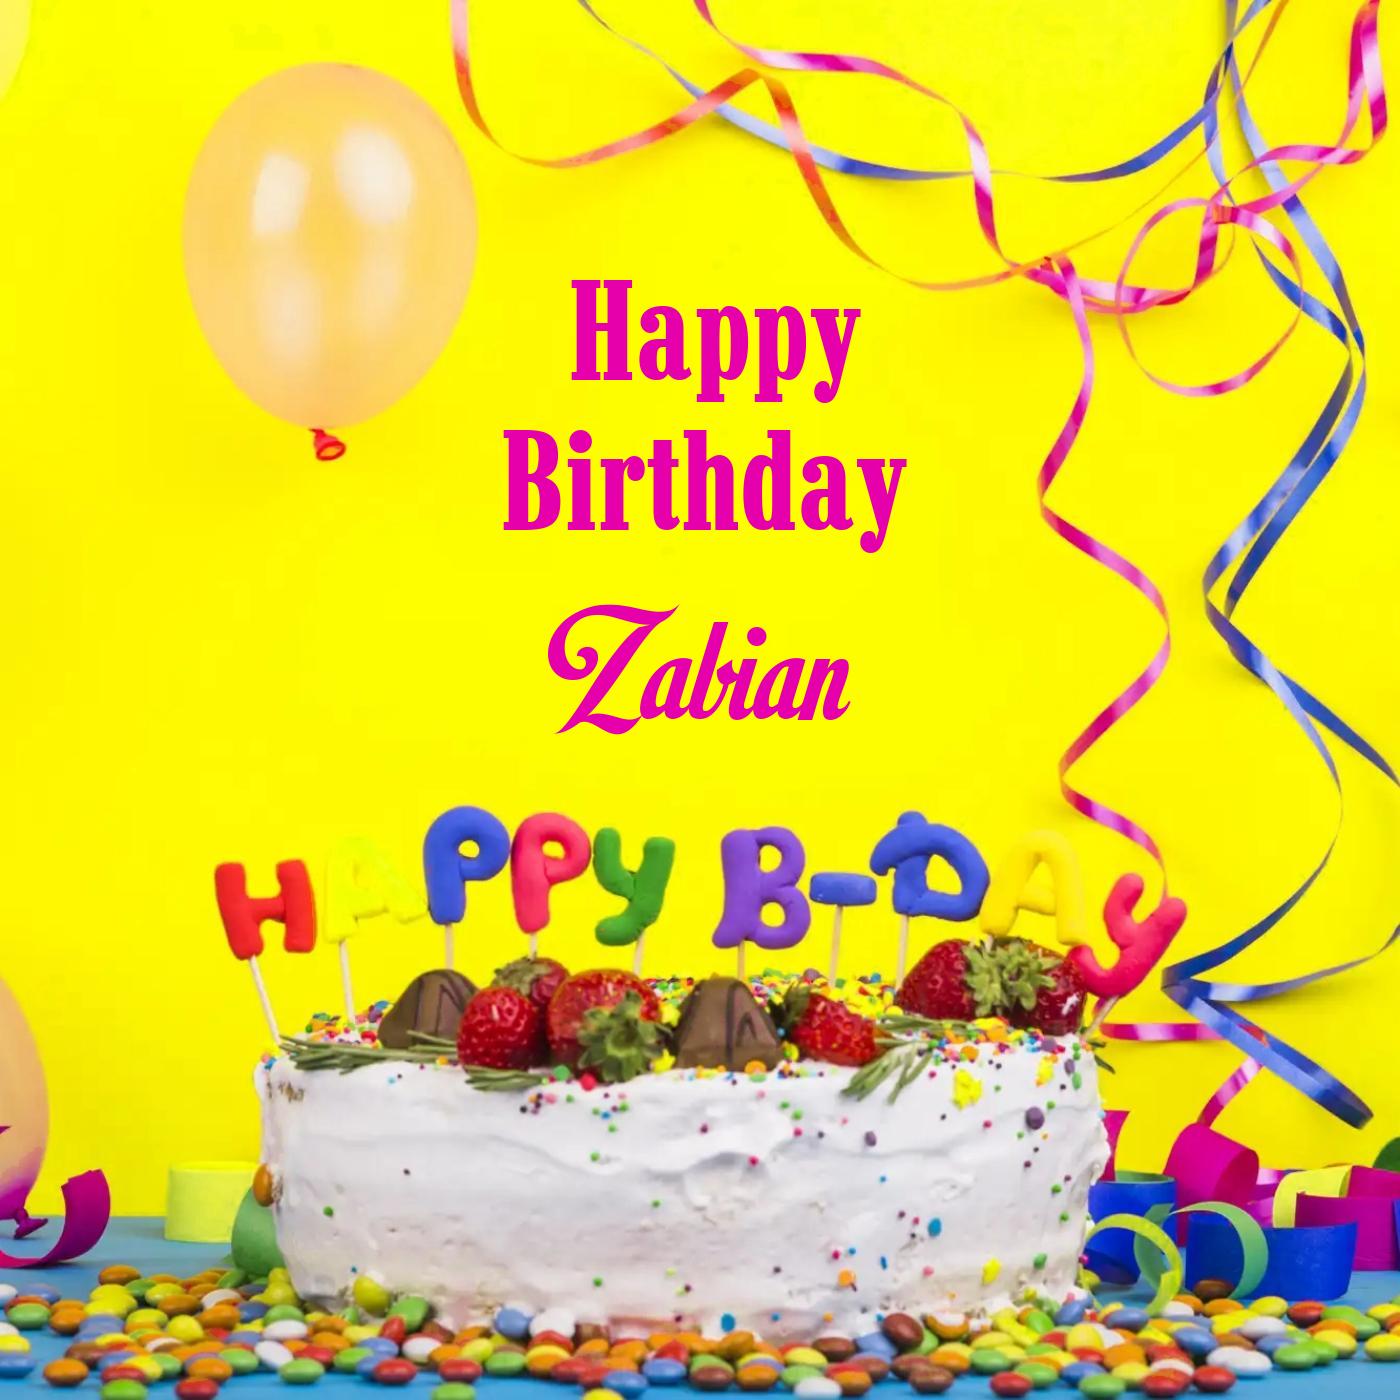 Happy Birthday Zabian Cake Decoration Card